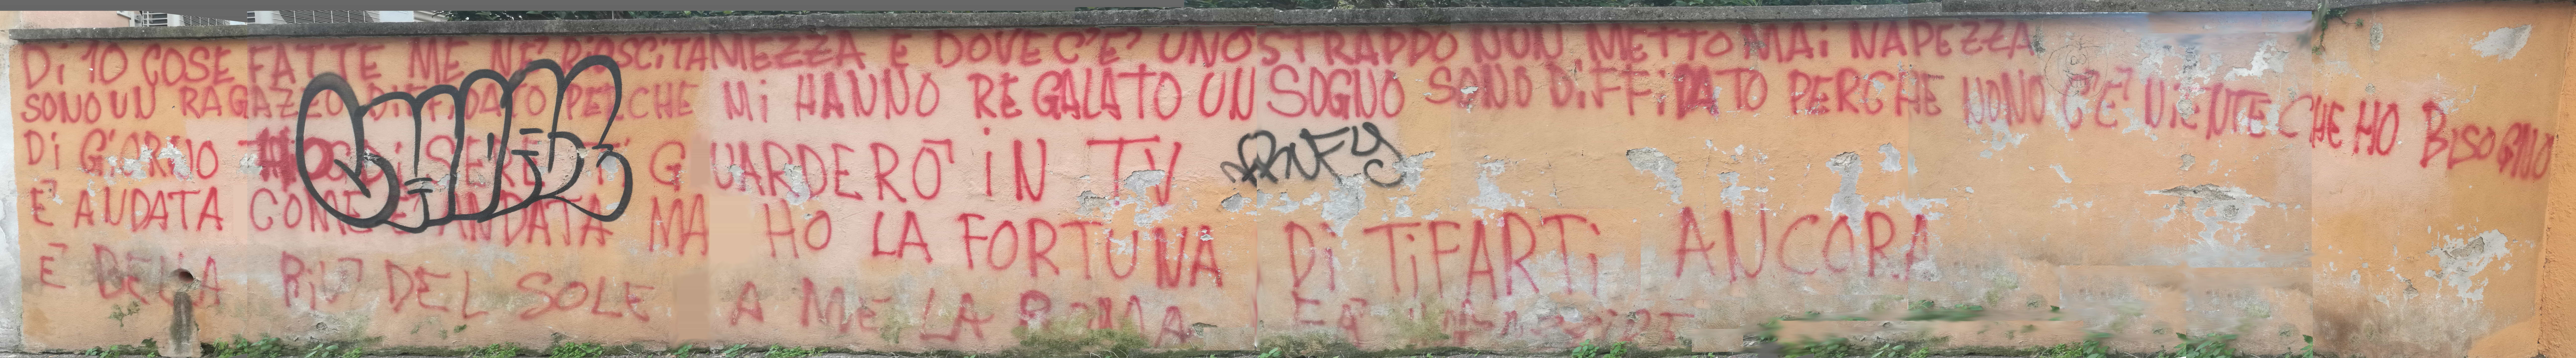 'Sono un ragazzo diffidato...'. Diese Ultrasadaption des Stückes 'Ragazzo fortunato' von Jovanotti liegt in einem besonders verkehrsberuhigten Teil der Piazza Bologna.